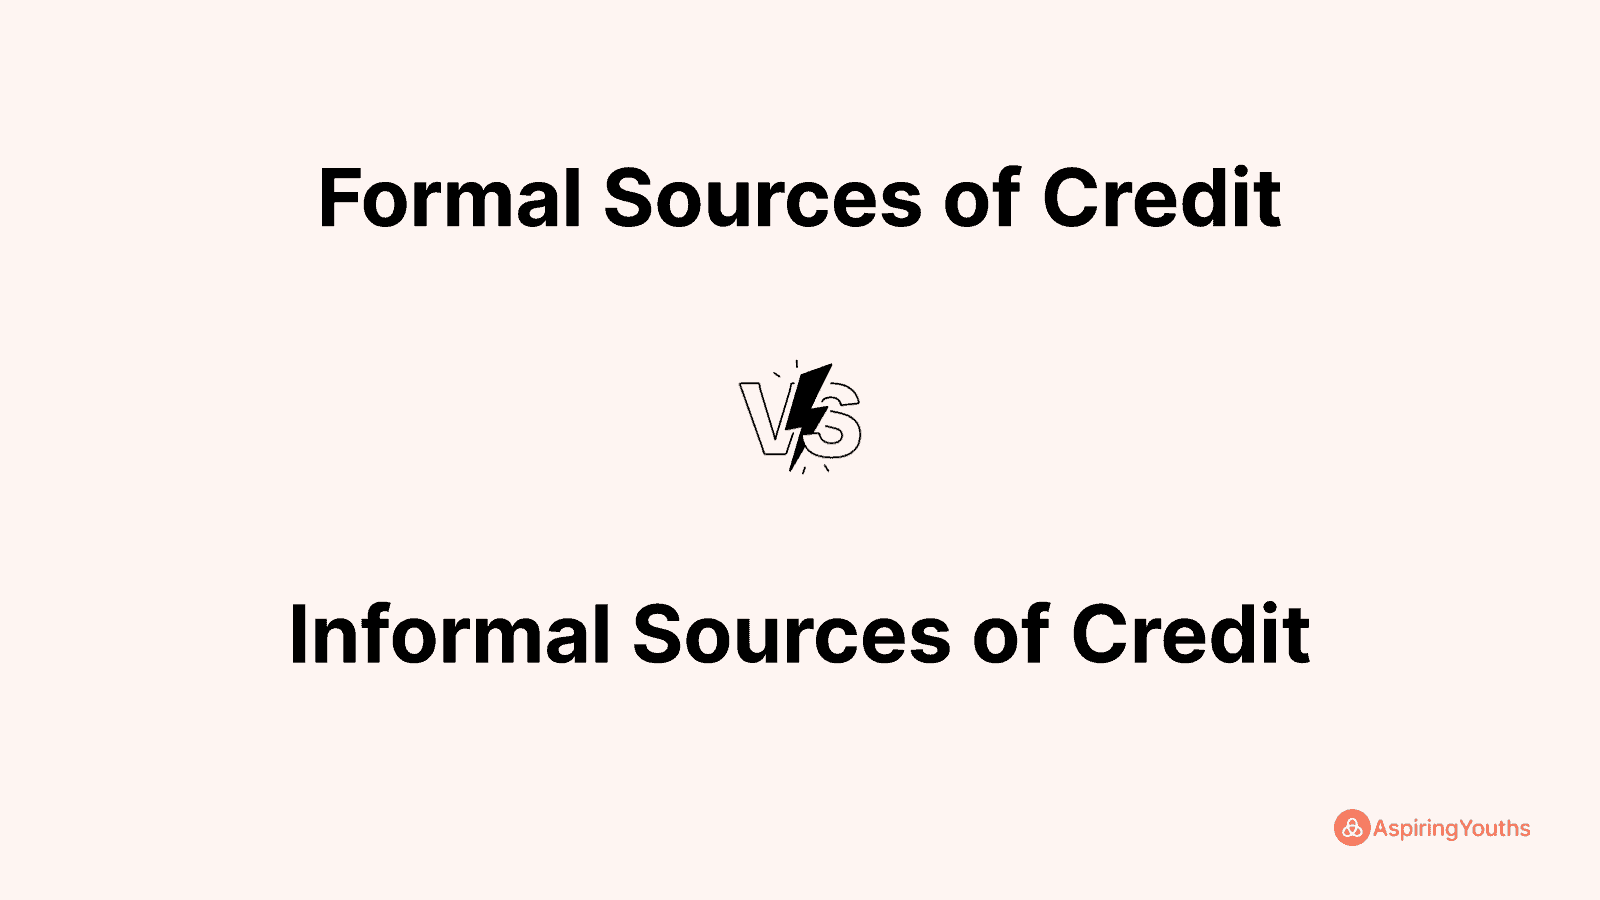 Formal Sources of Credit vs Informal Sources of Credit